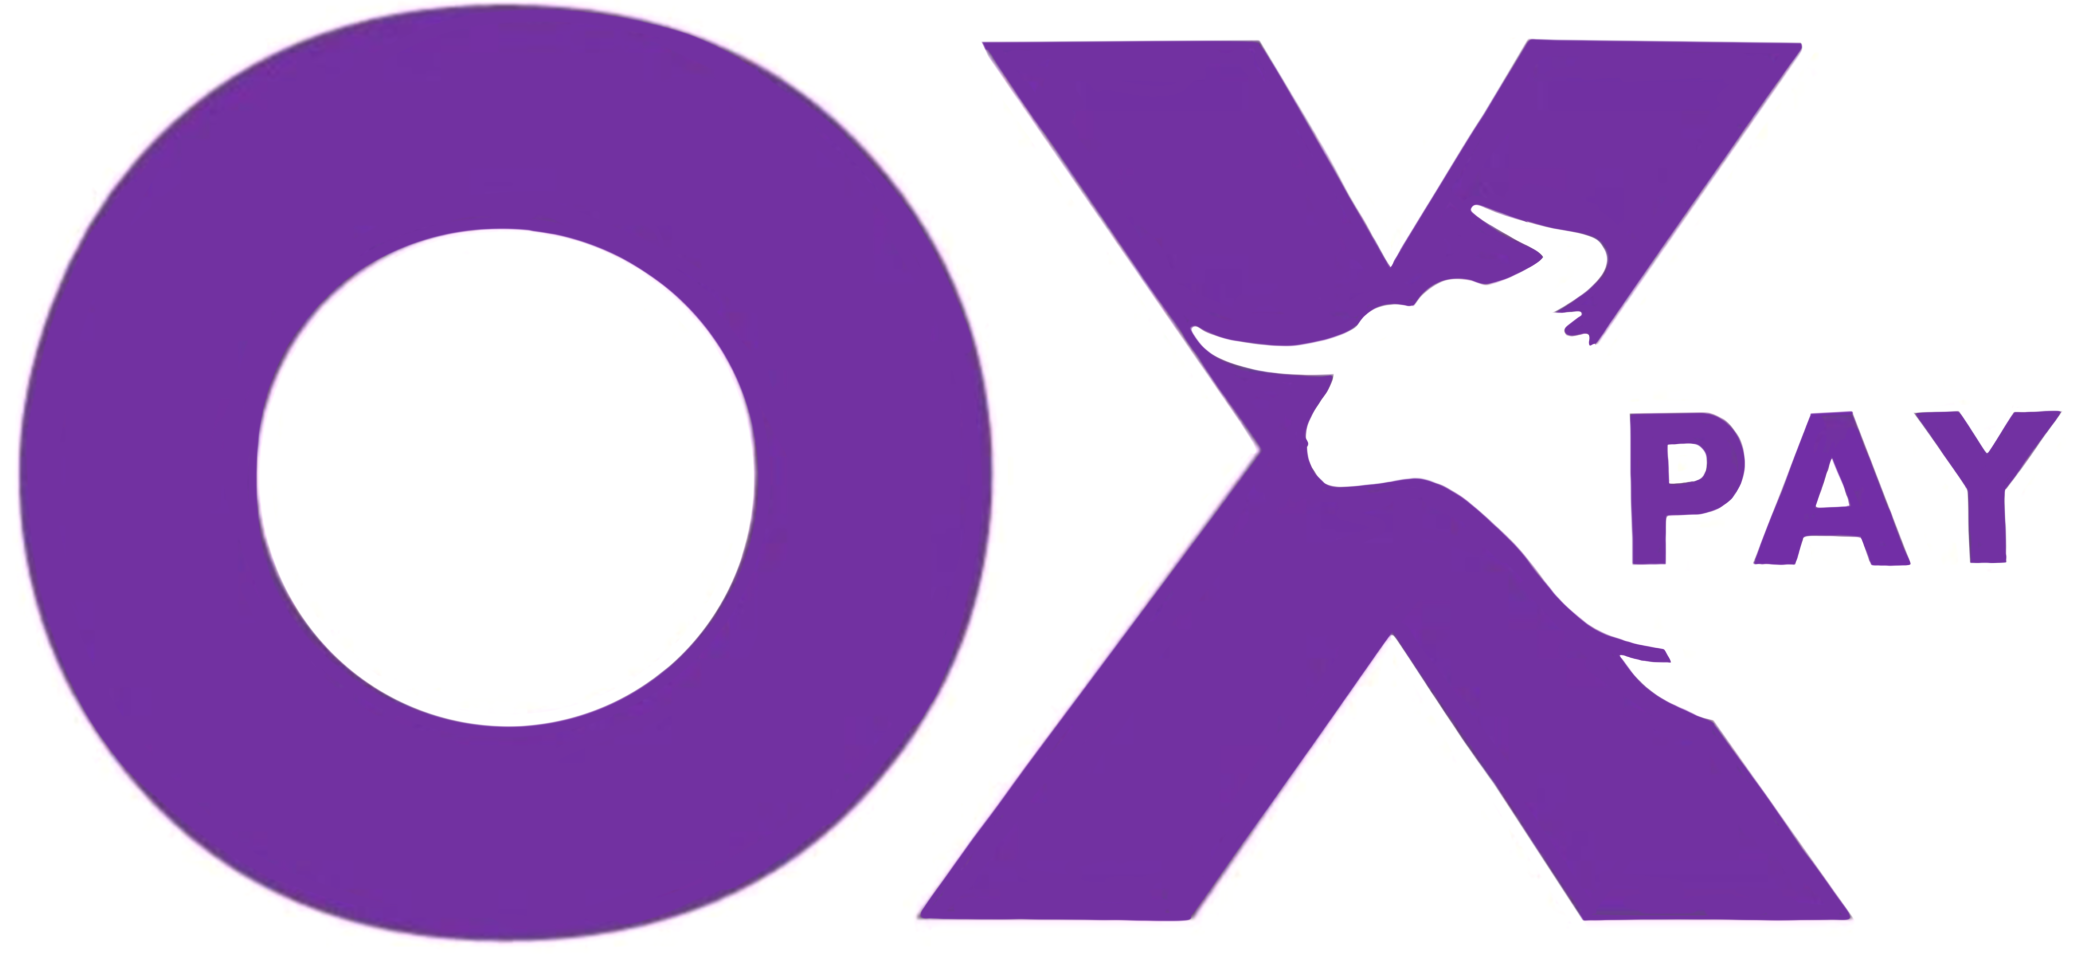 Image shows OxPay company logo